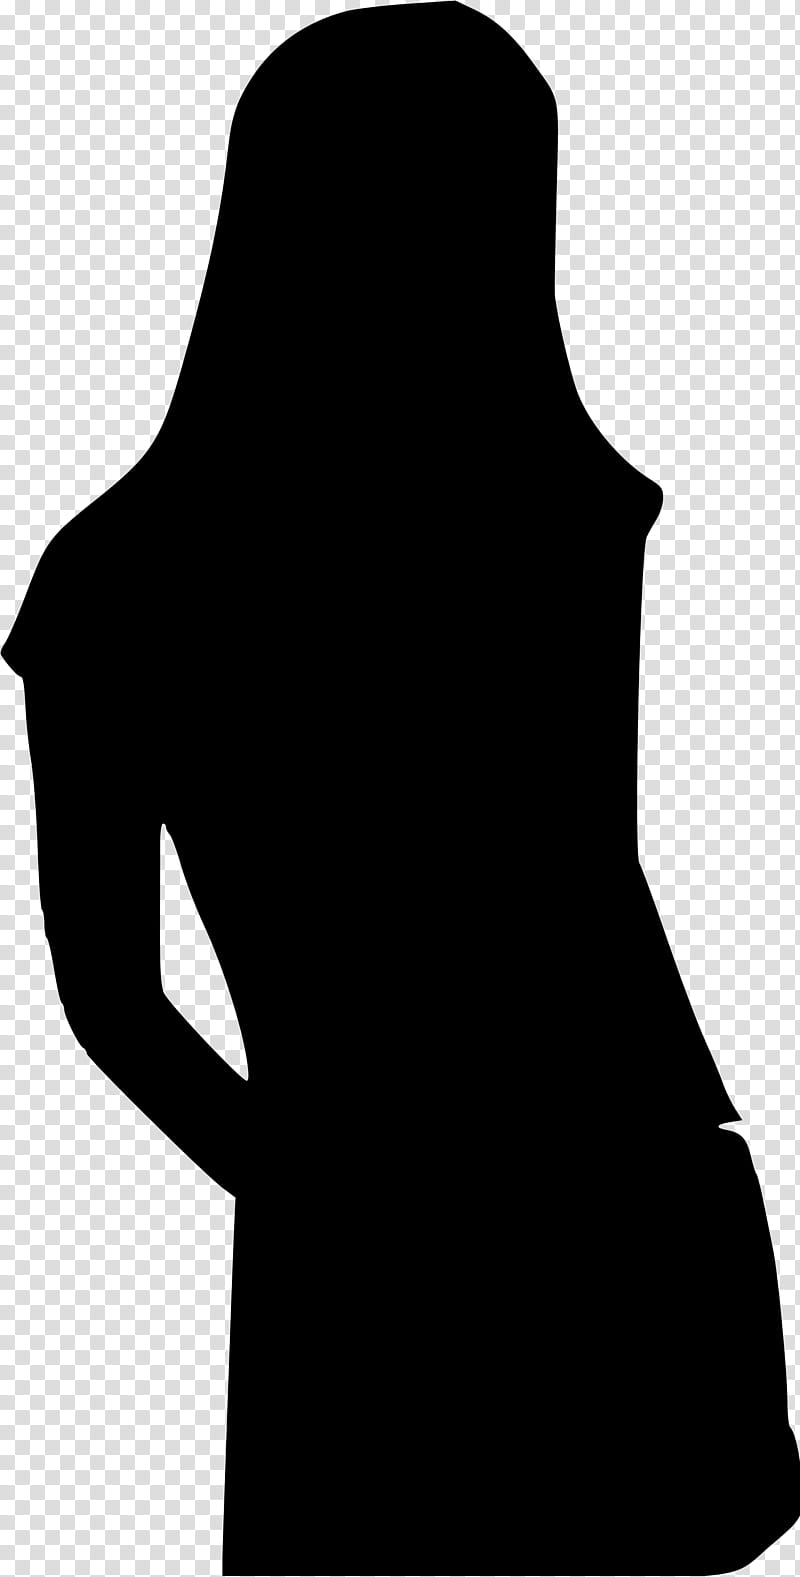 Silhouette Black, Ukulele, Sara Bareilles, Neck, Joint, Shoulder, Dress, Little Black Dress transparent background PNG clipart